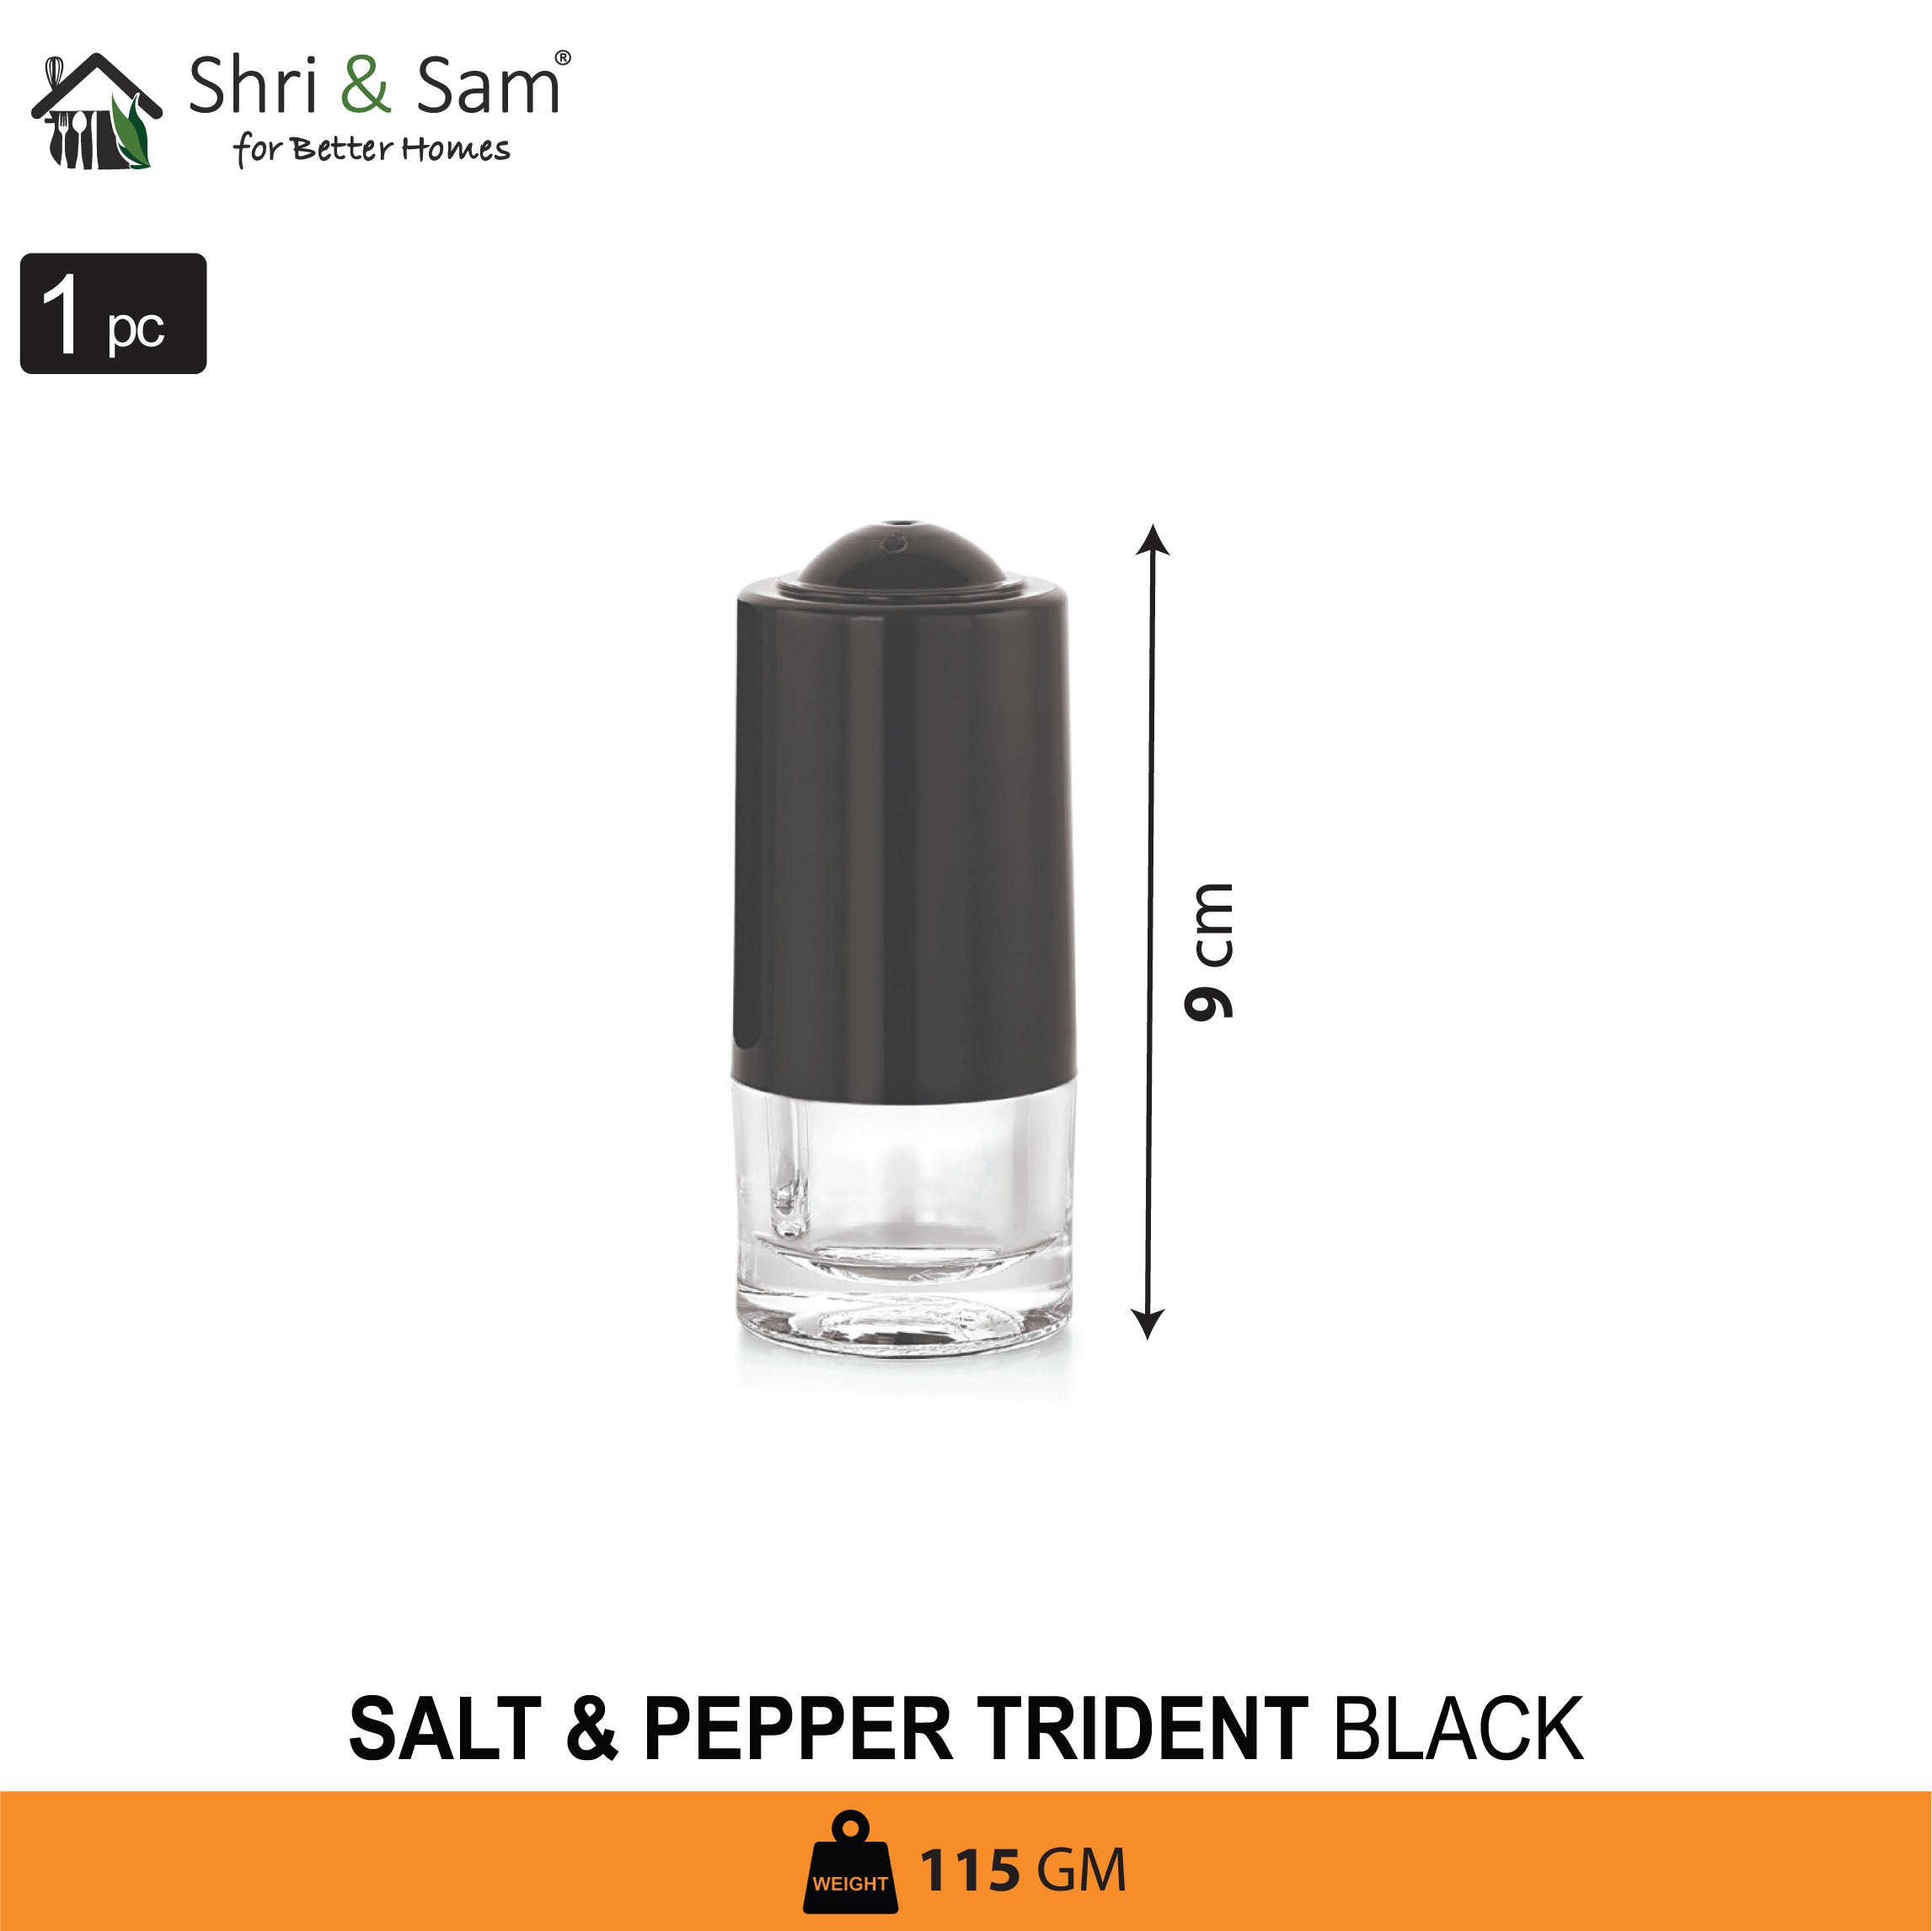 Stainless Steel Trident Black Salt & Pepper